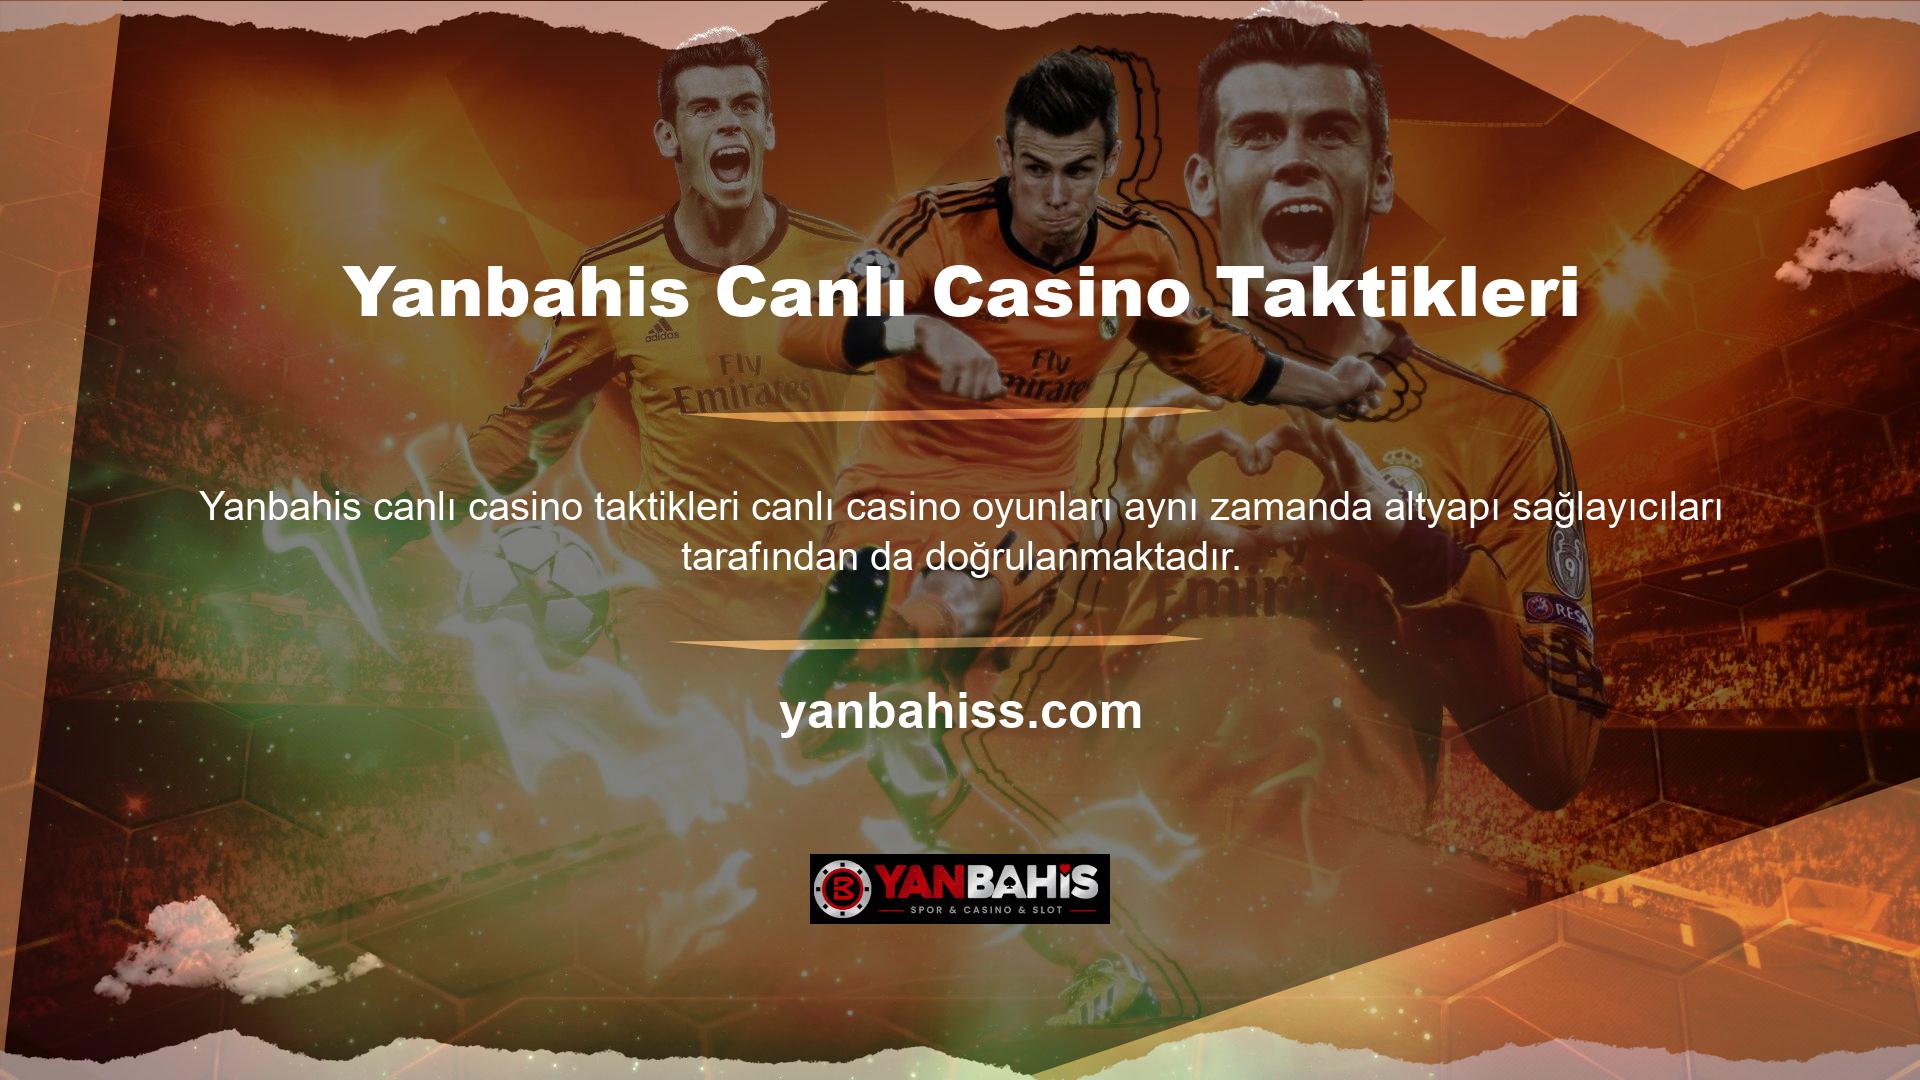 Yanbahis Canlı Casino, 7/24 izlenen kamera sistemine sahip olup, canlı taktik casino oyunlarını anında oynamanıza olanak sağlar